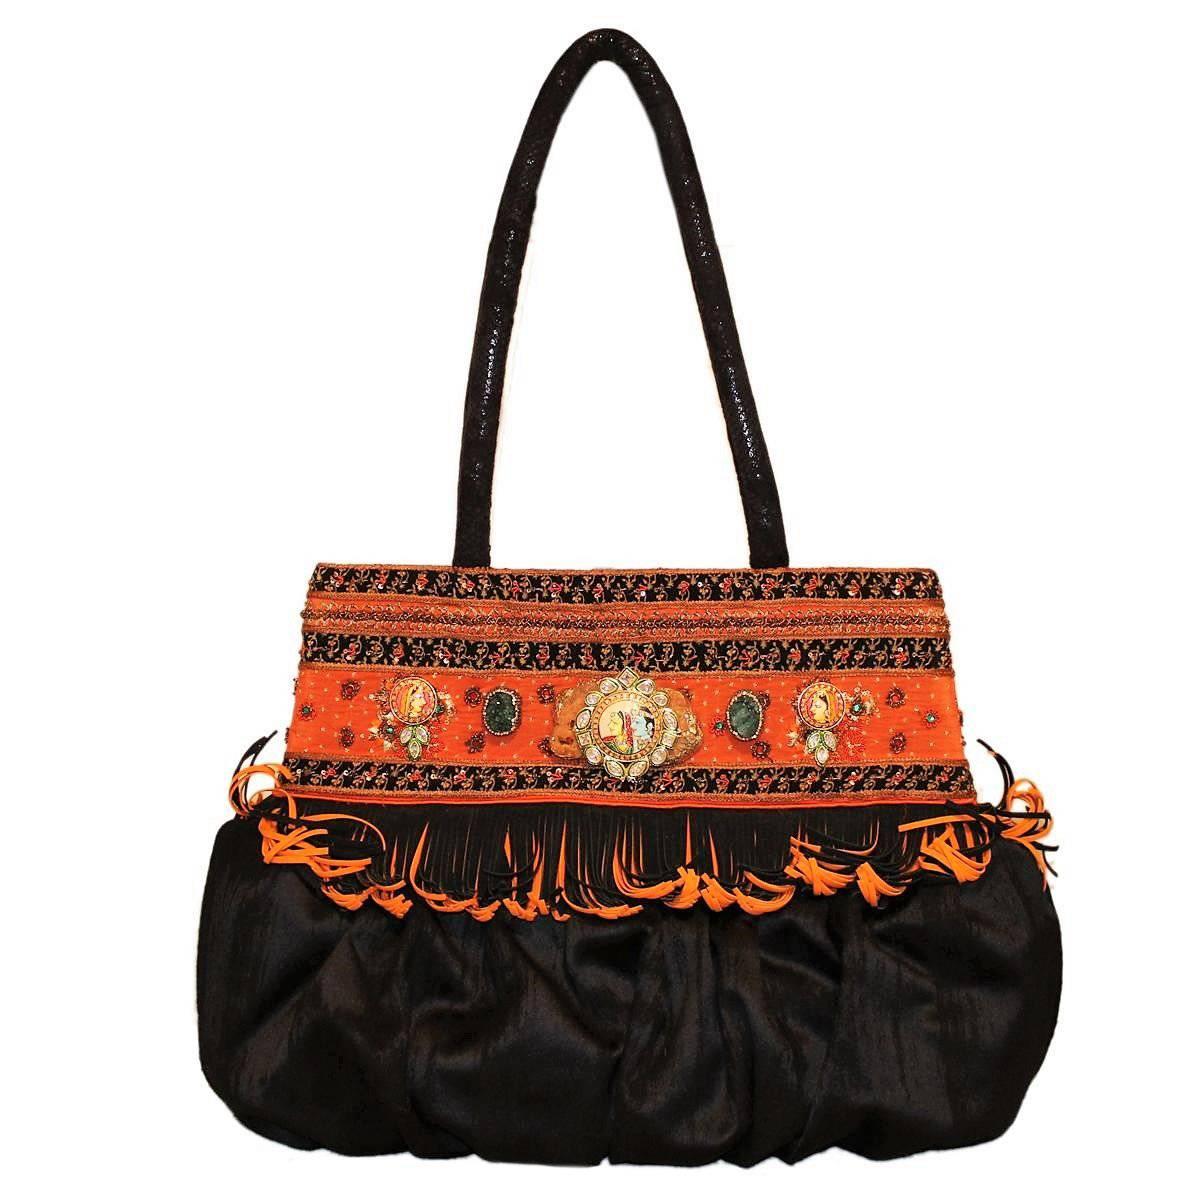 Roberta Balsamo Limited Edition Jewel bag